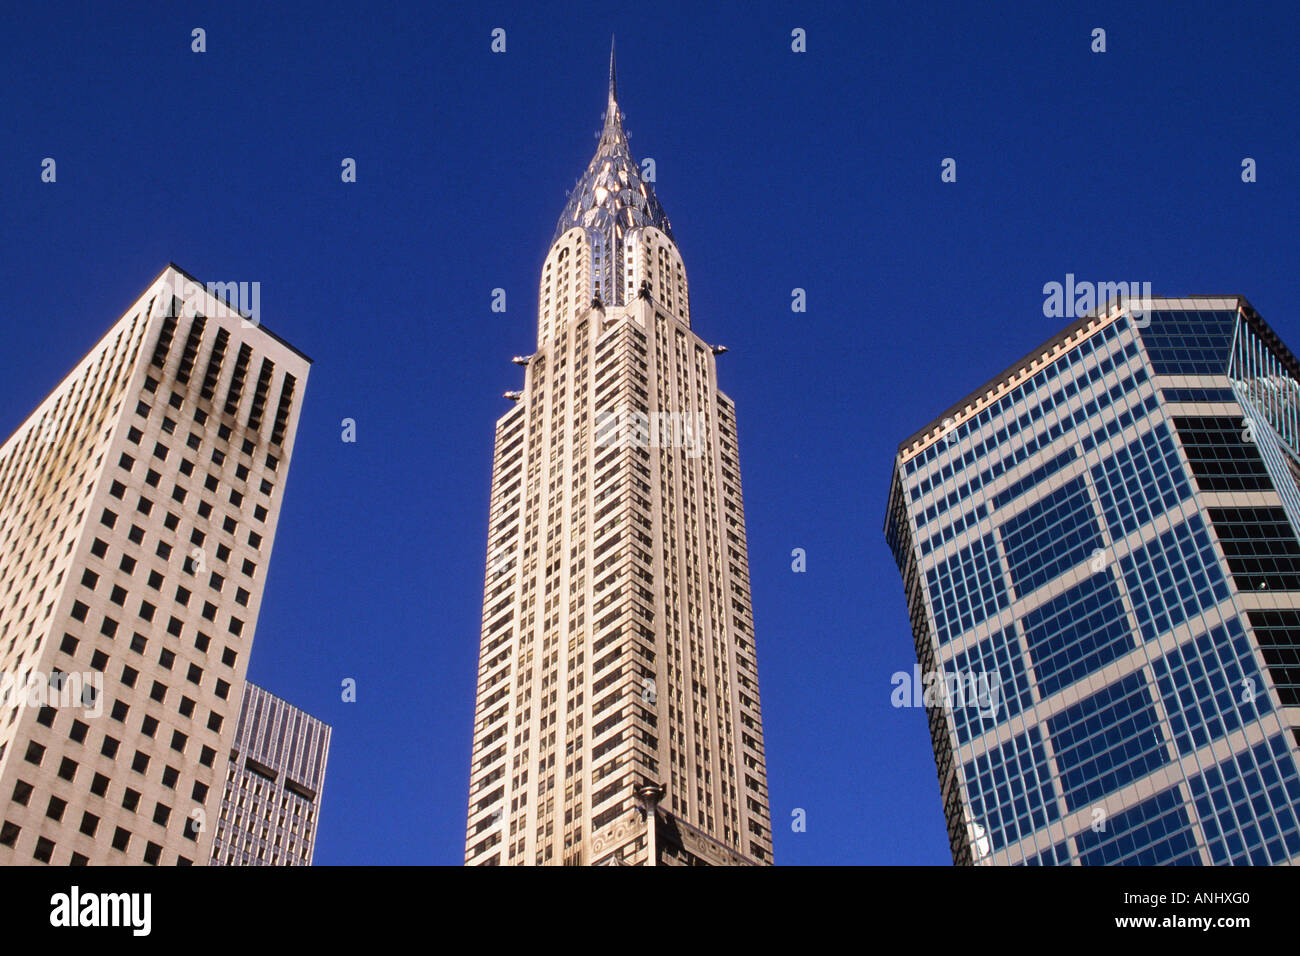 Bâtiment Chrysler. Gratte-ciel, art déco, immeubles de bureaux en hauteur sur 42nd rues. Horizon de Midtown Manhattan à New York, États-Unis Banque D'Images